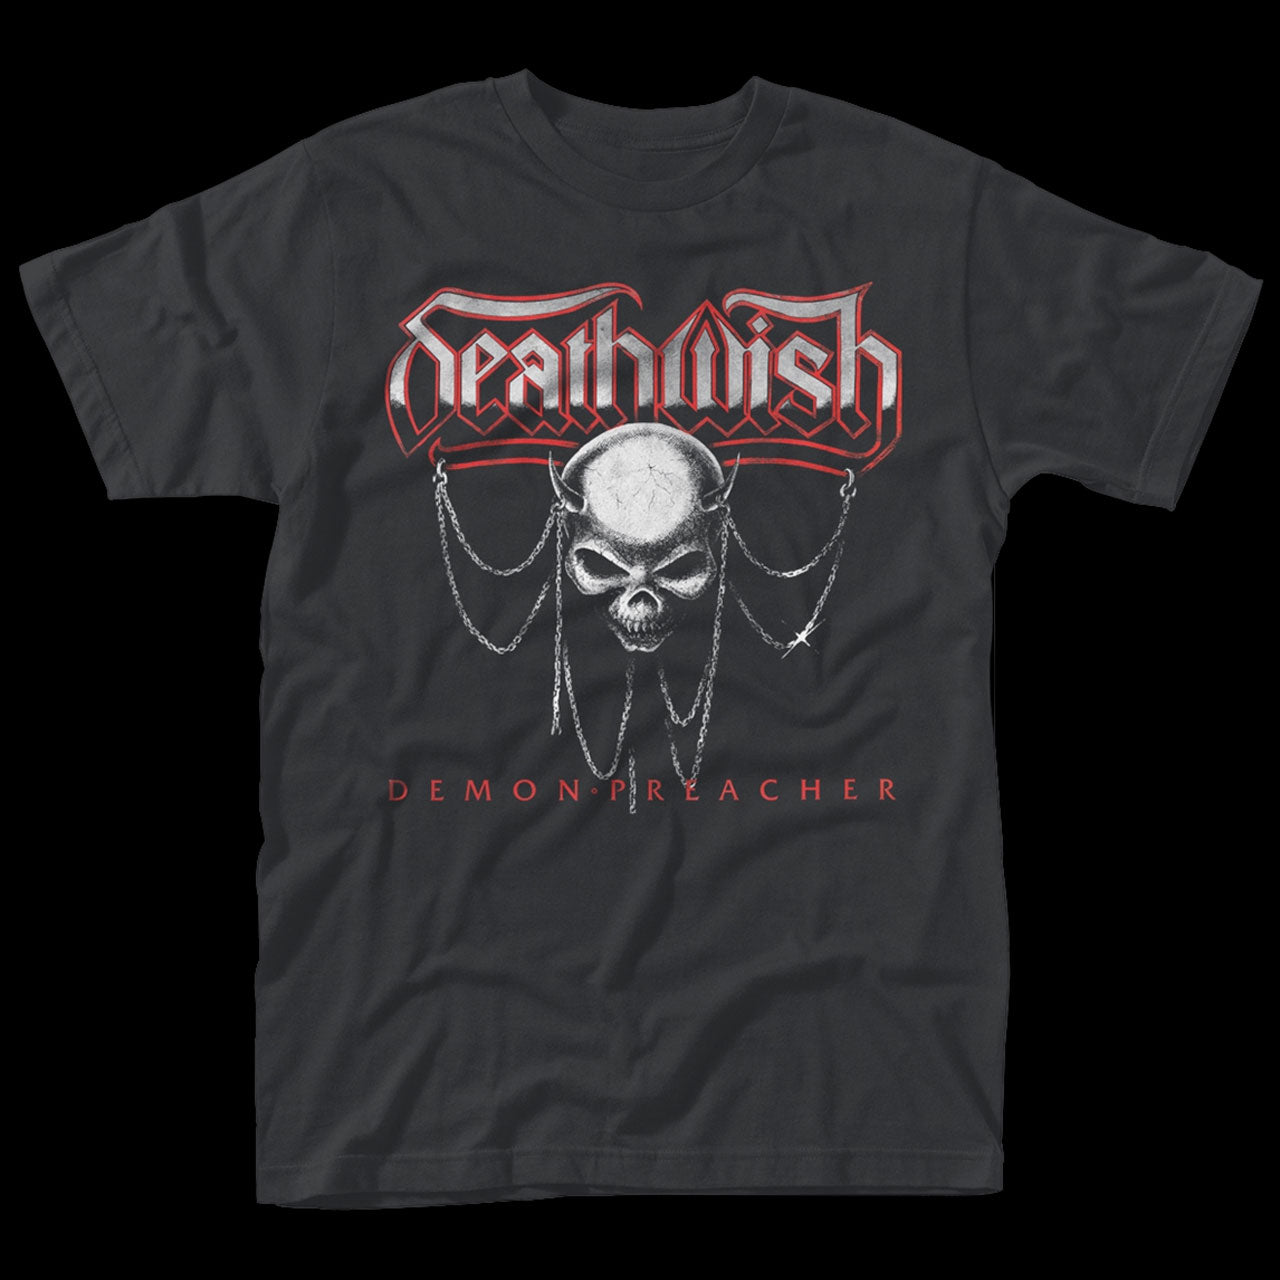 Deathwish - Demon Preacher (T-Shirt)